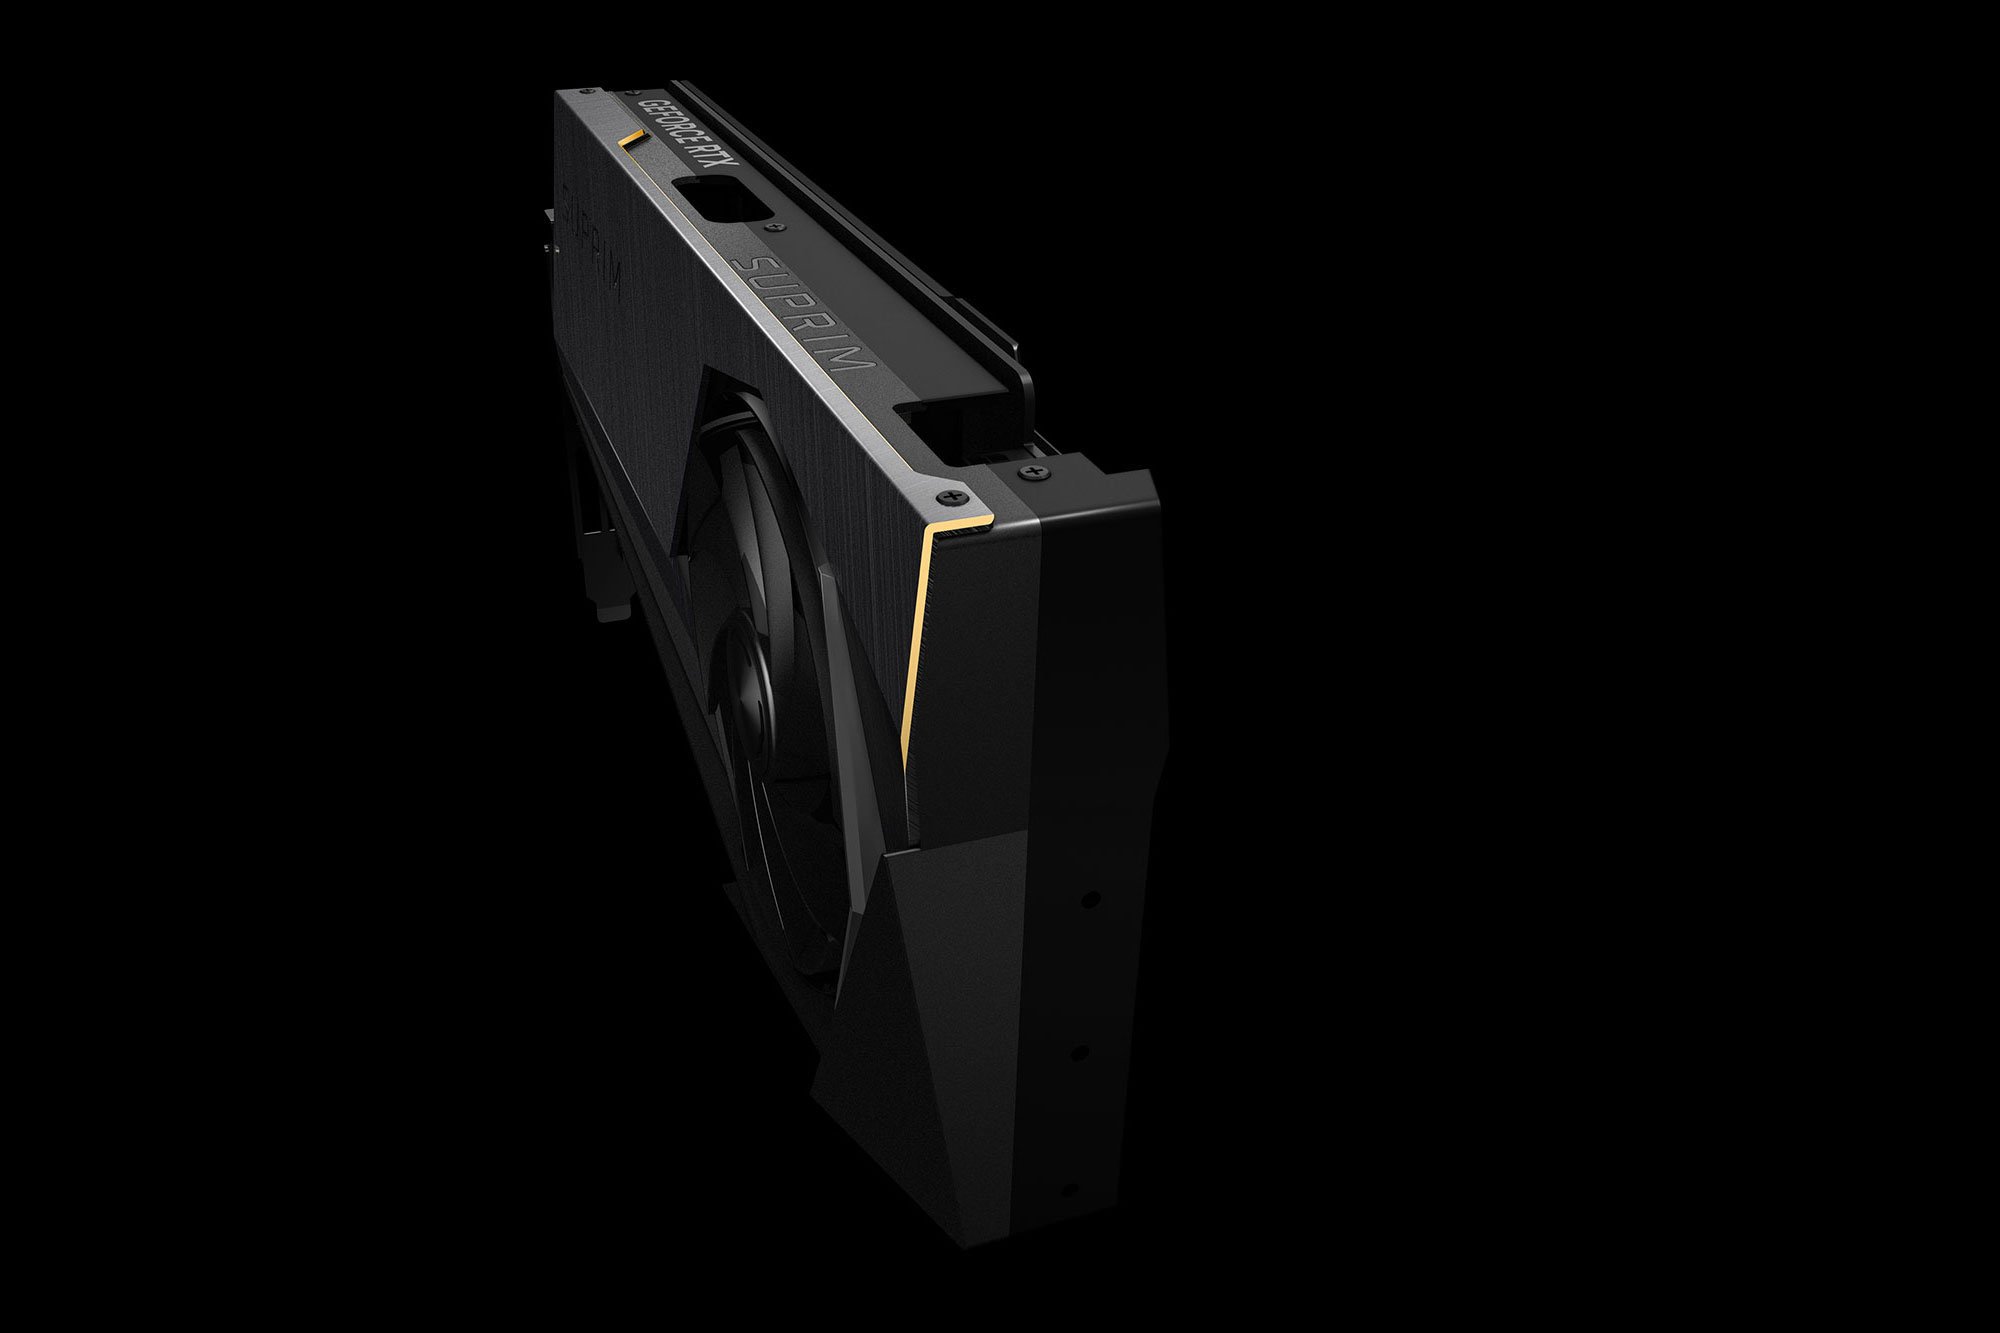 GeForce RTX® 4090 SUPRIM LIQUID X 24G Video Card